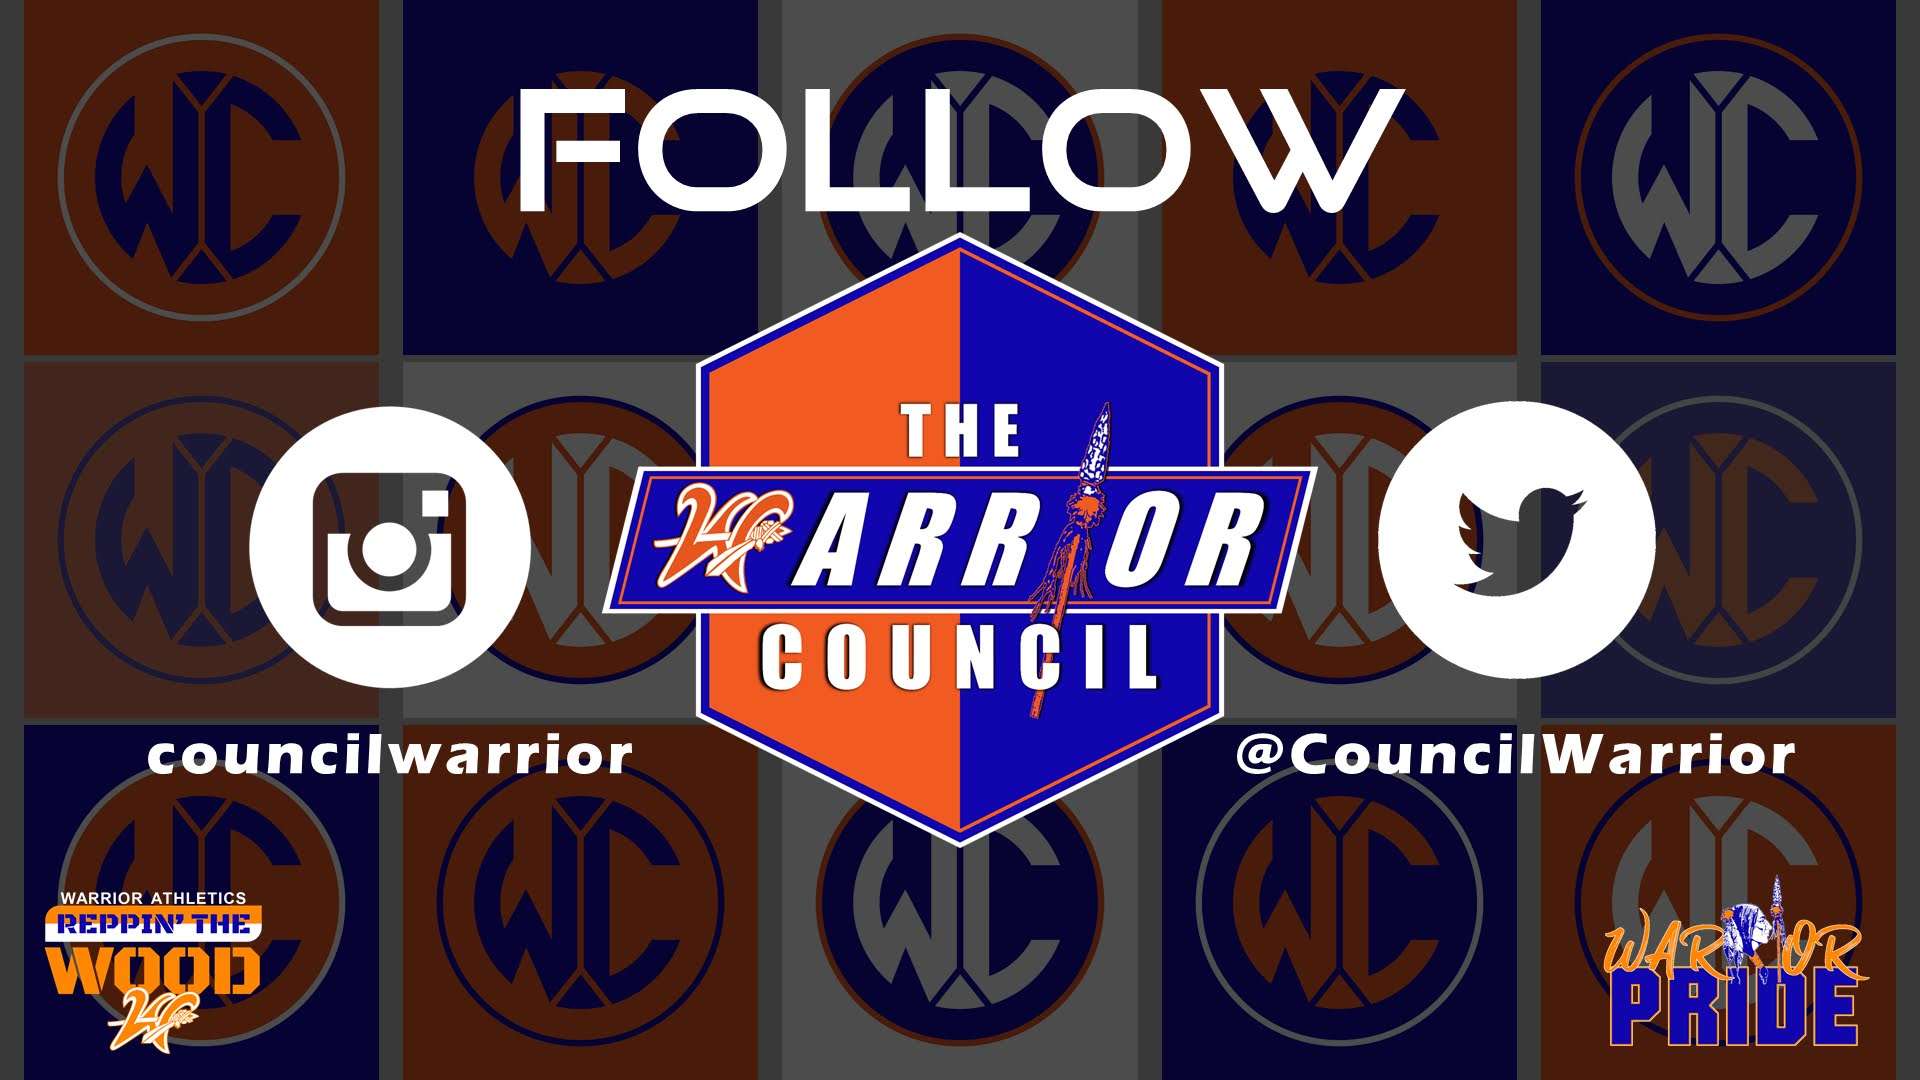 Follow the warrior council poster